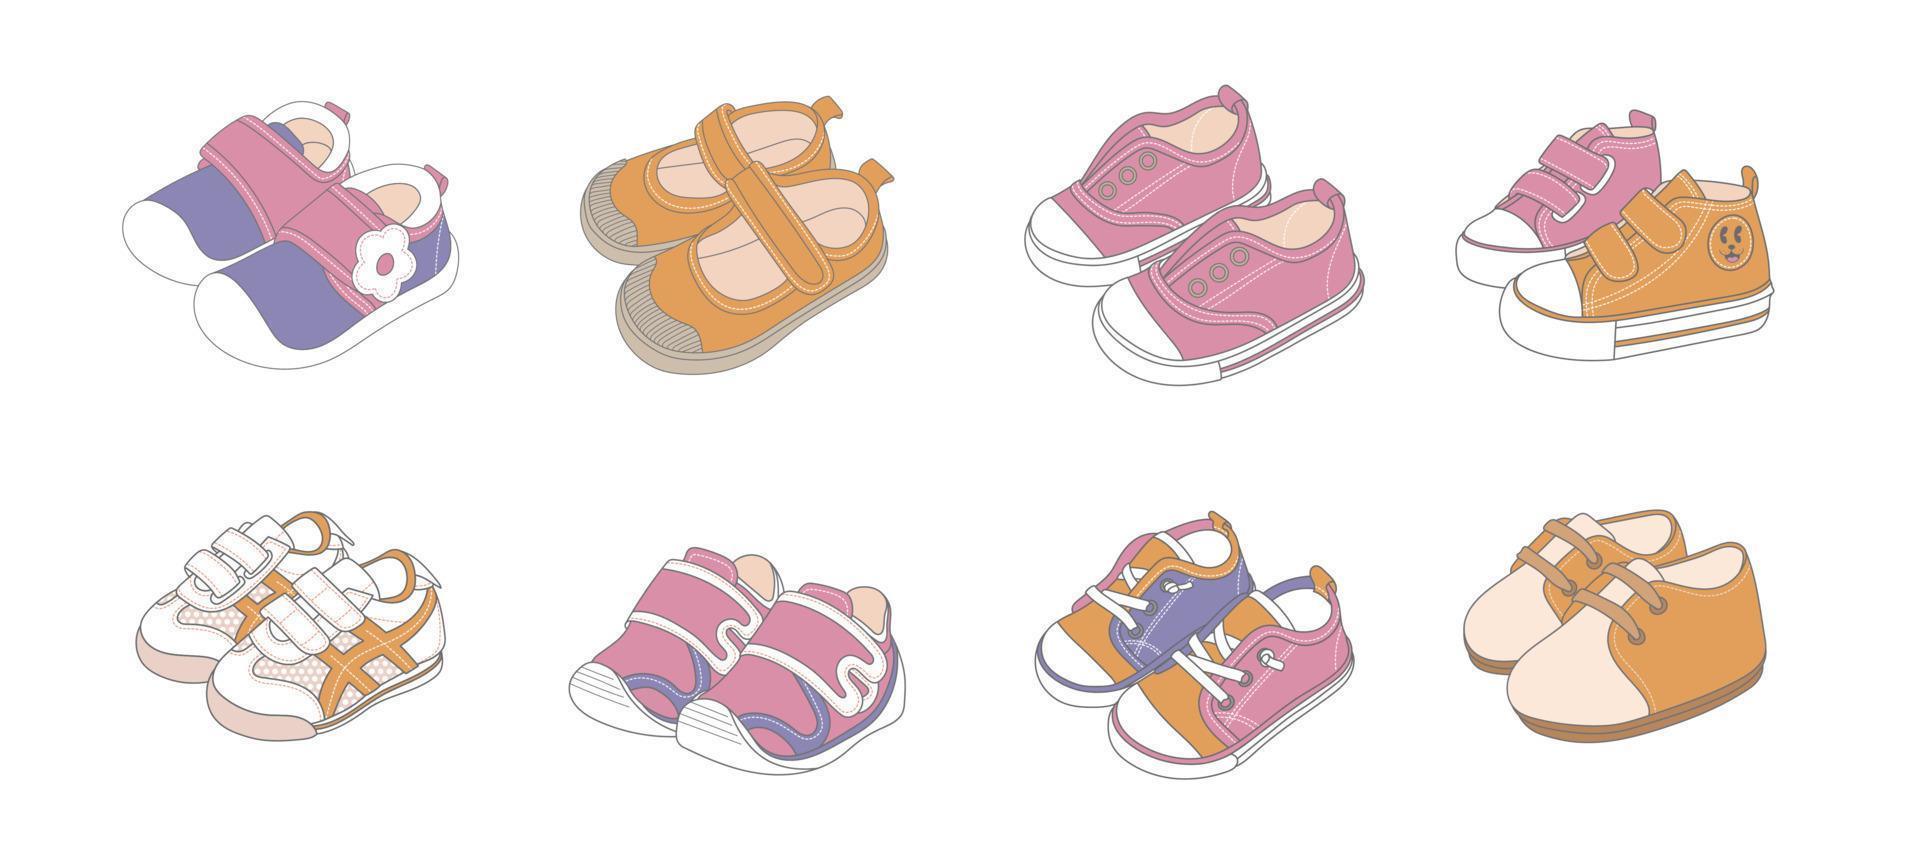 Baby shoes ,Children's shoes ornament set vector